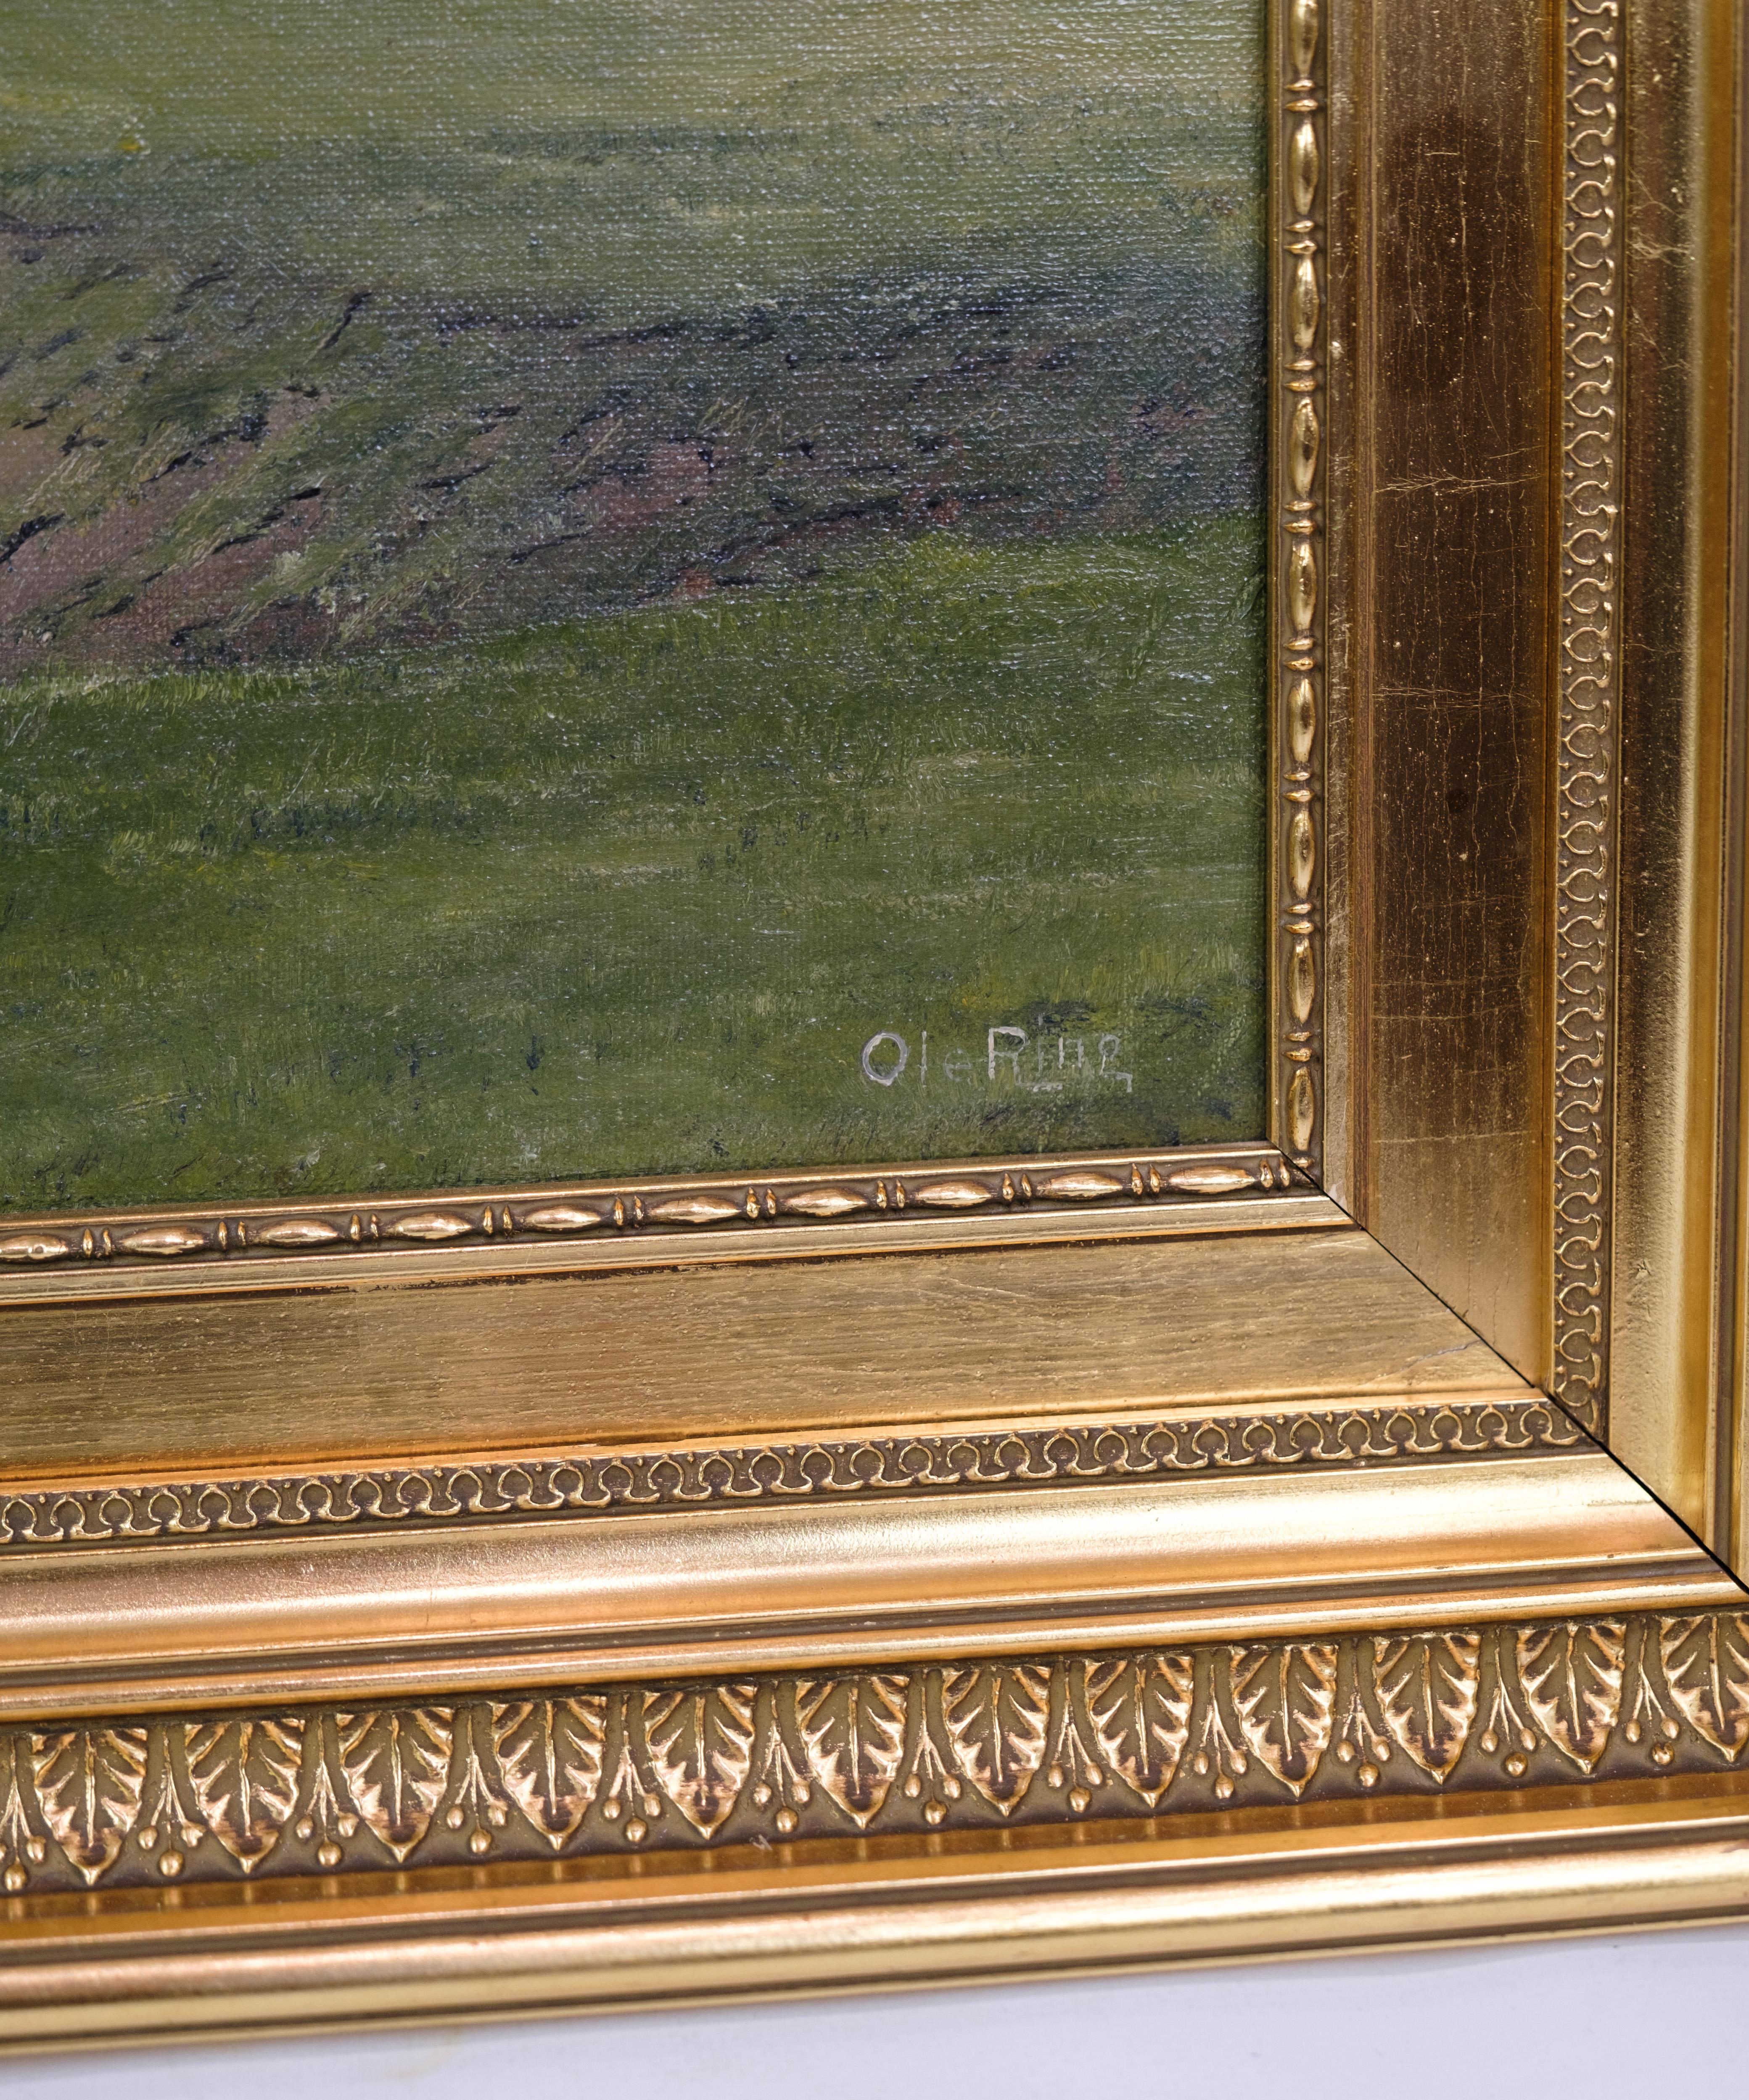 Landschaftsgemälde mit Blattgoldrahmen des Künstlers Ole Ring (geb. 1902 - gest. 1972), der in der Gegend von Roskilde, Dänemark, lebte. Das Bild zeigt vermutlich die Landschaft um den Wald von Boserup, der auf der Rückseite abgebildet ist.
H: 55,5